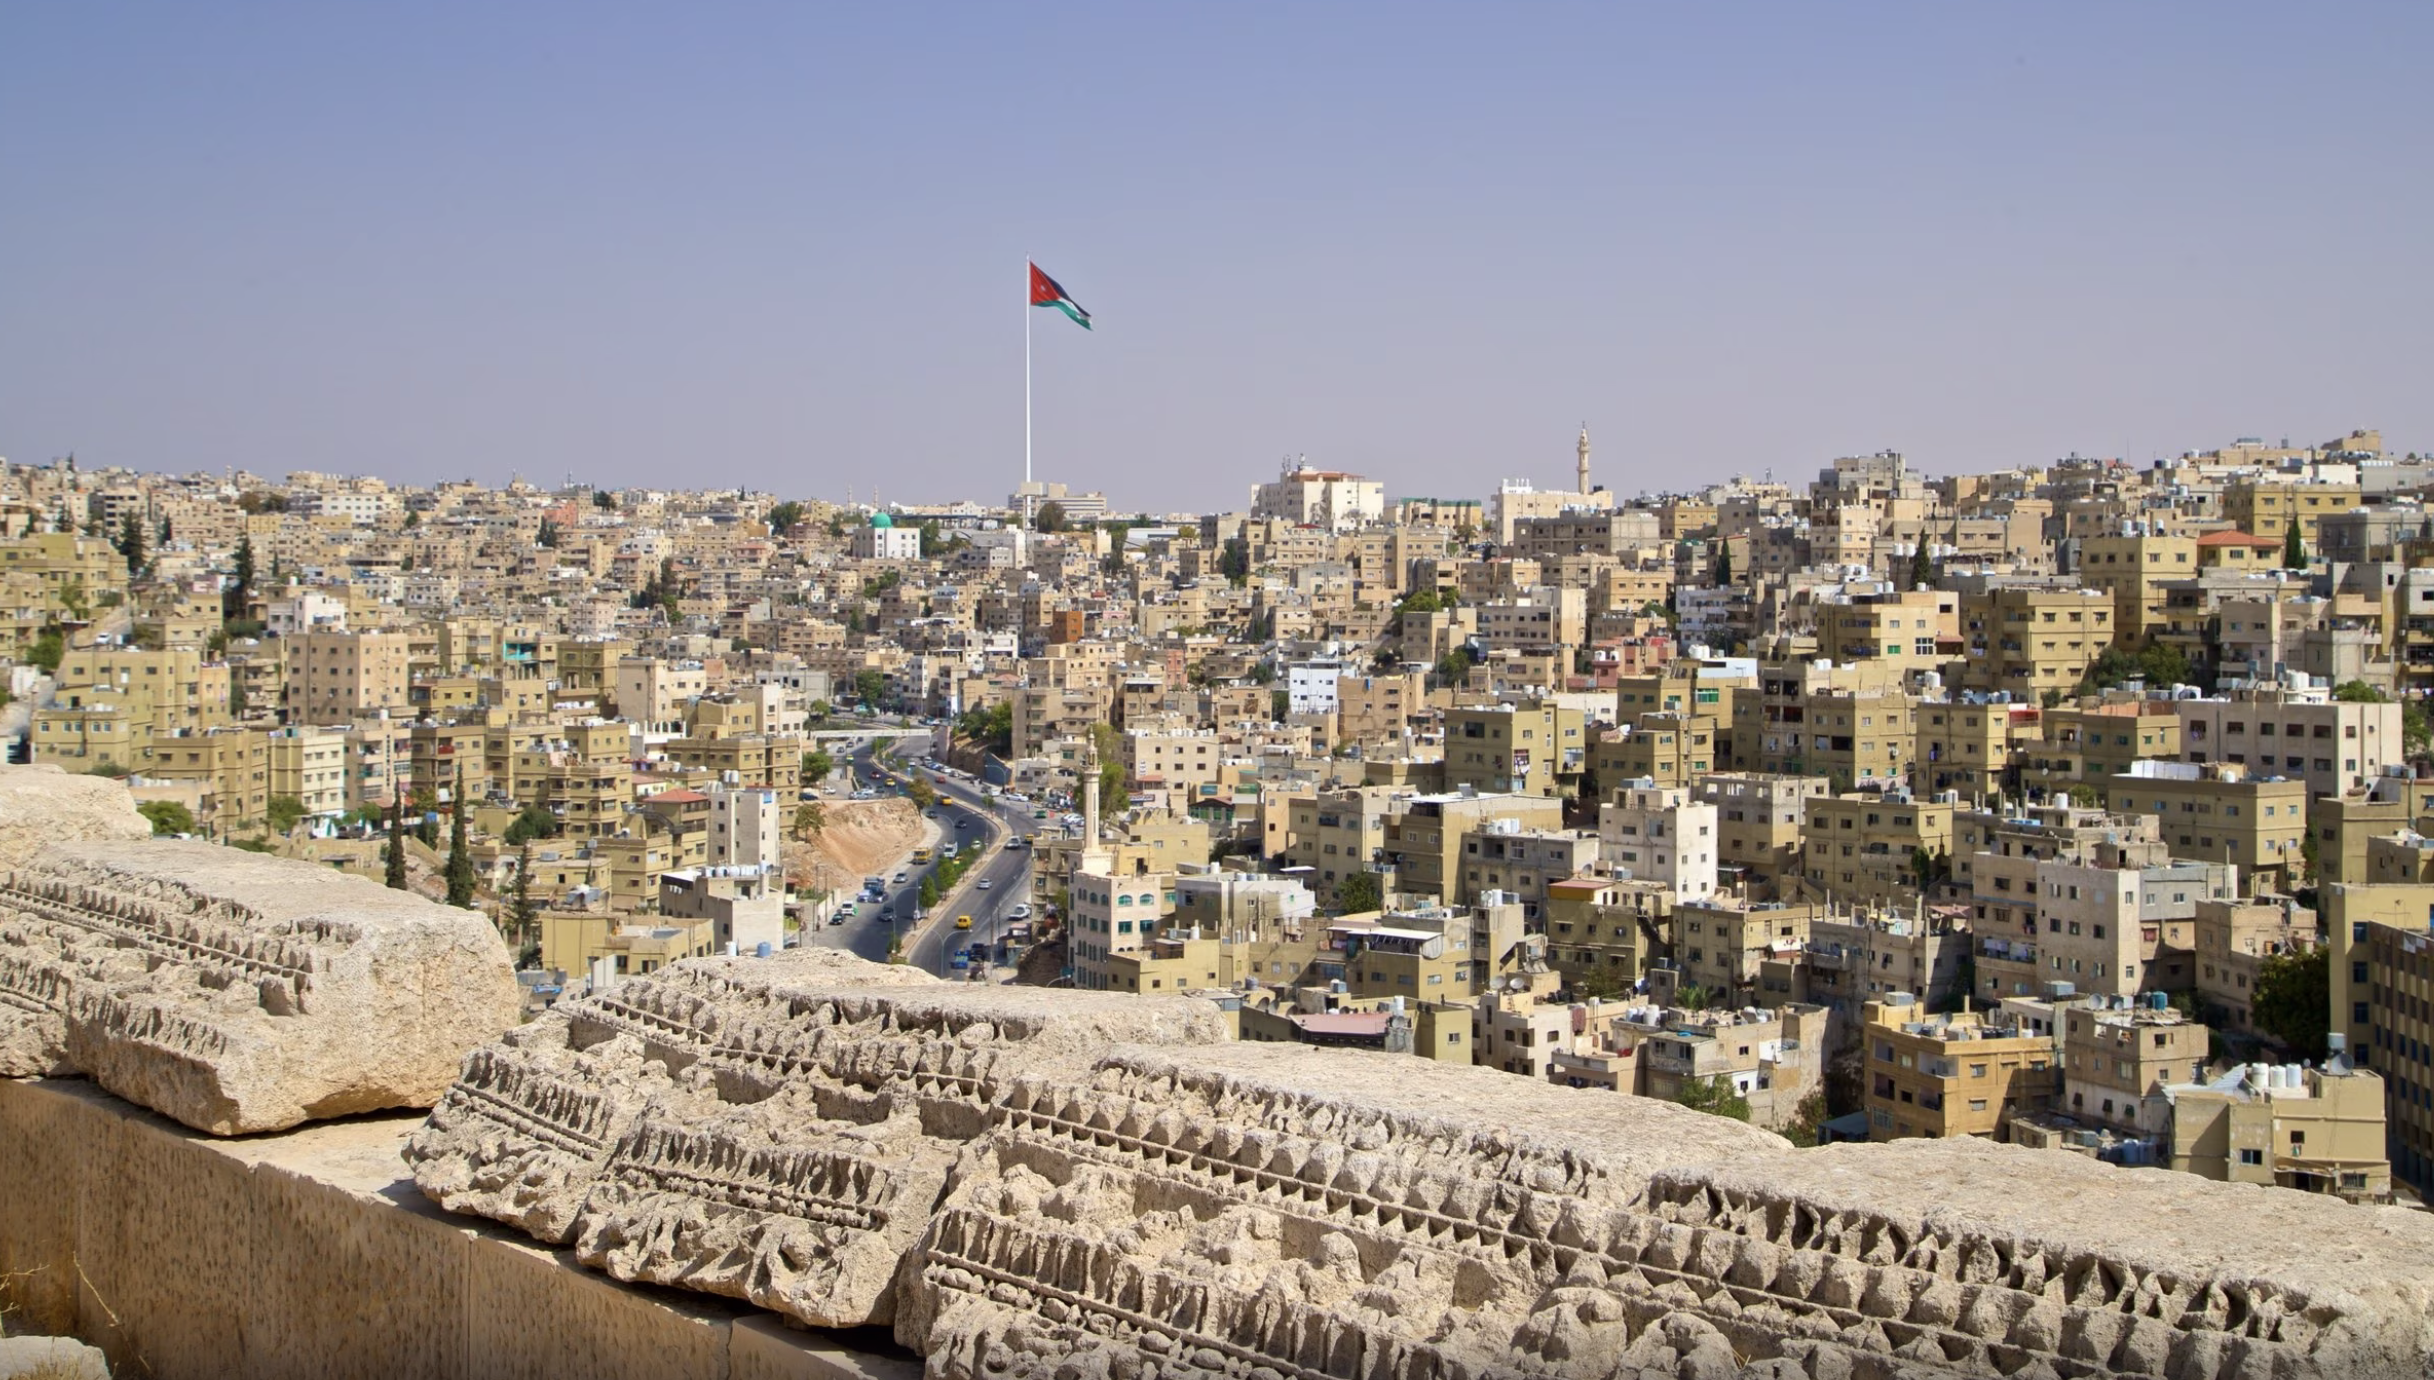 Review of Amman Citadel